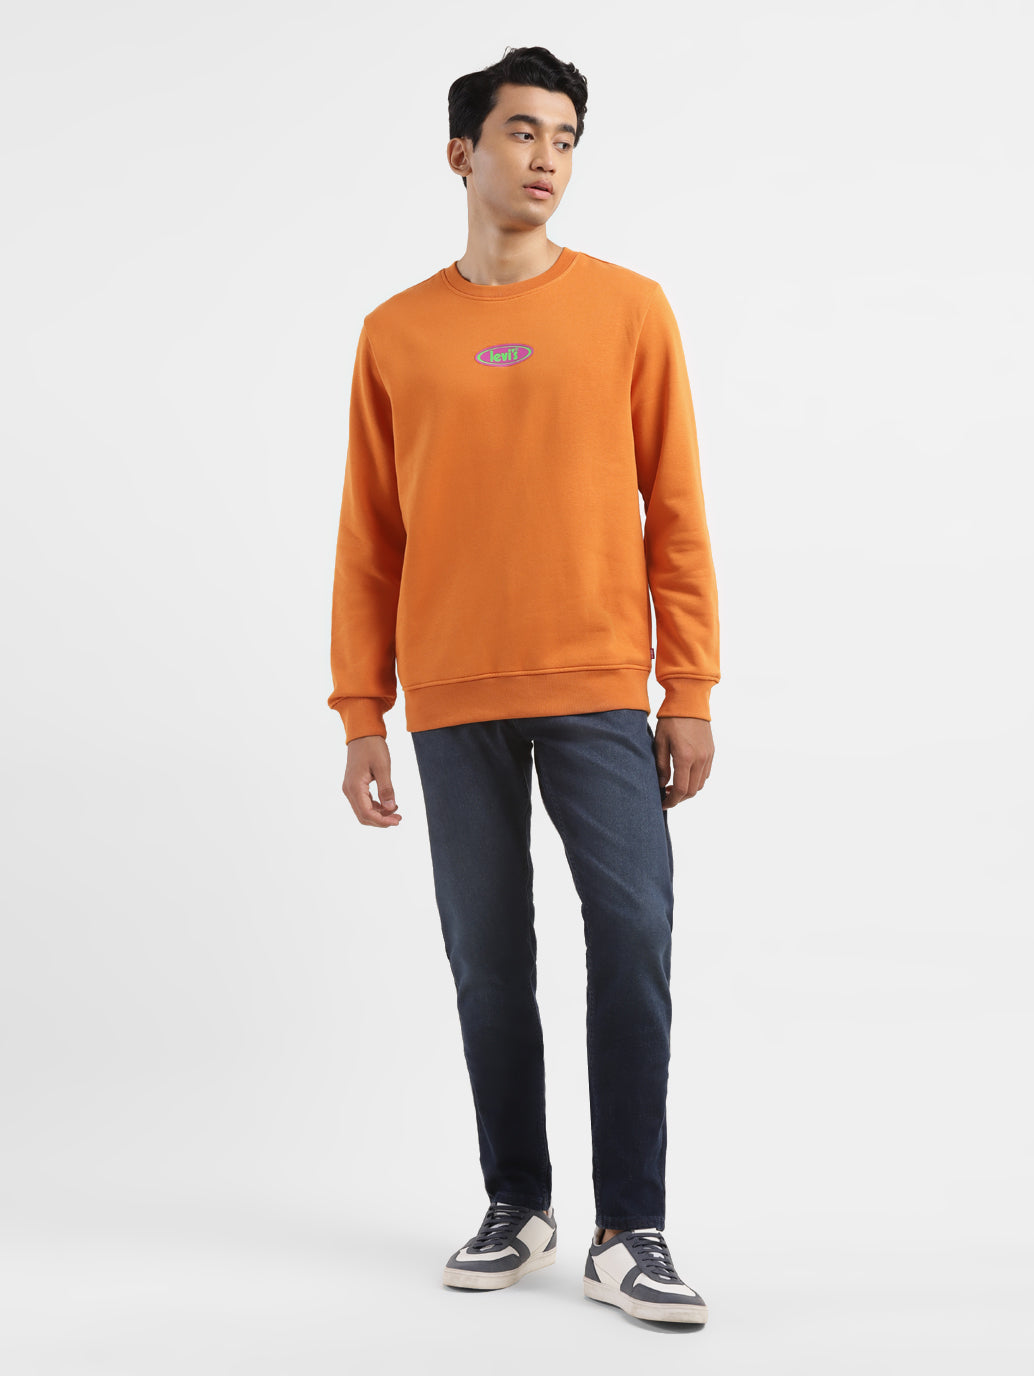 Men's Solid Orange Crew Neck Sweatshirt